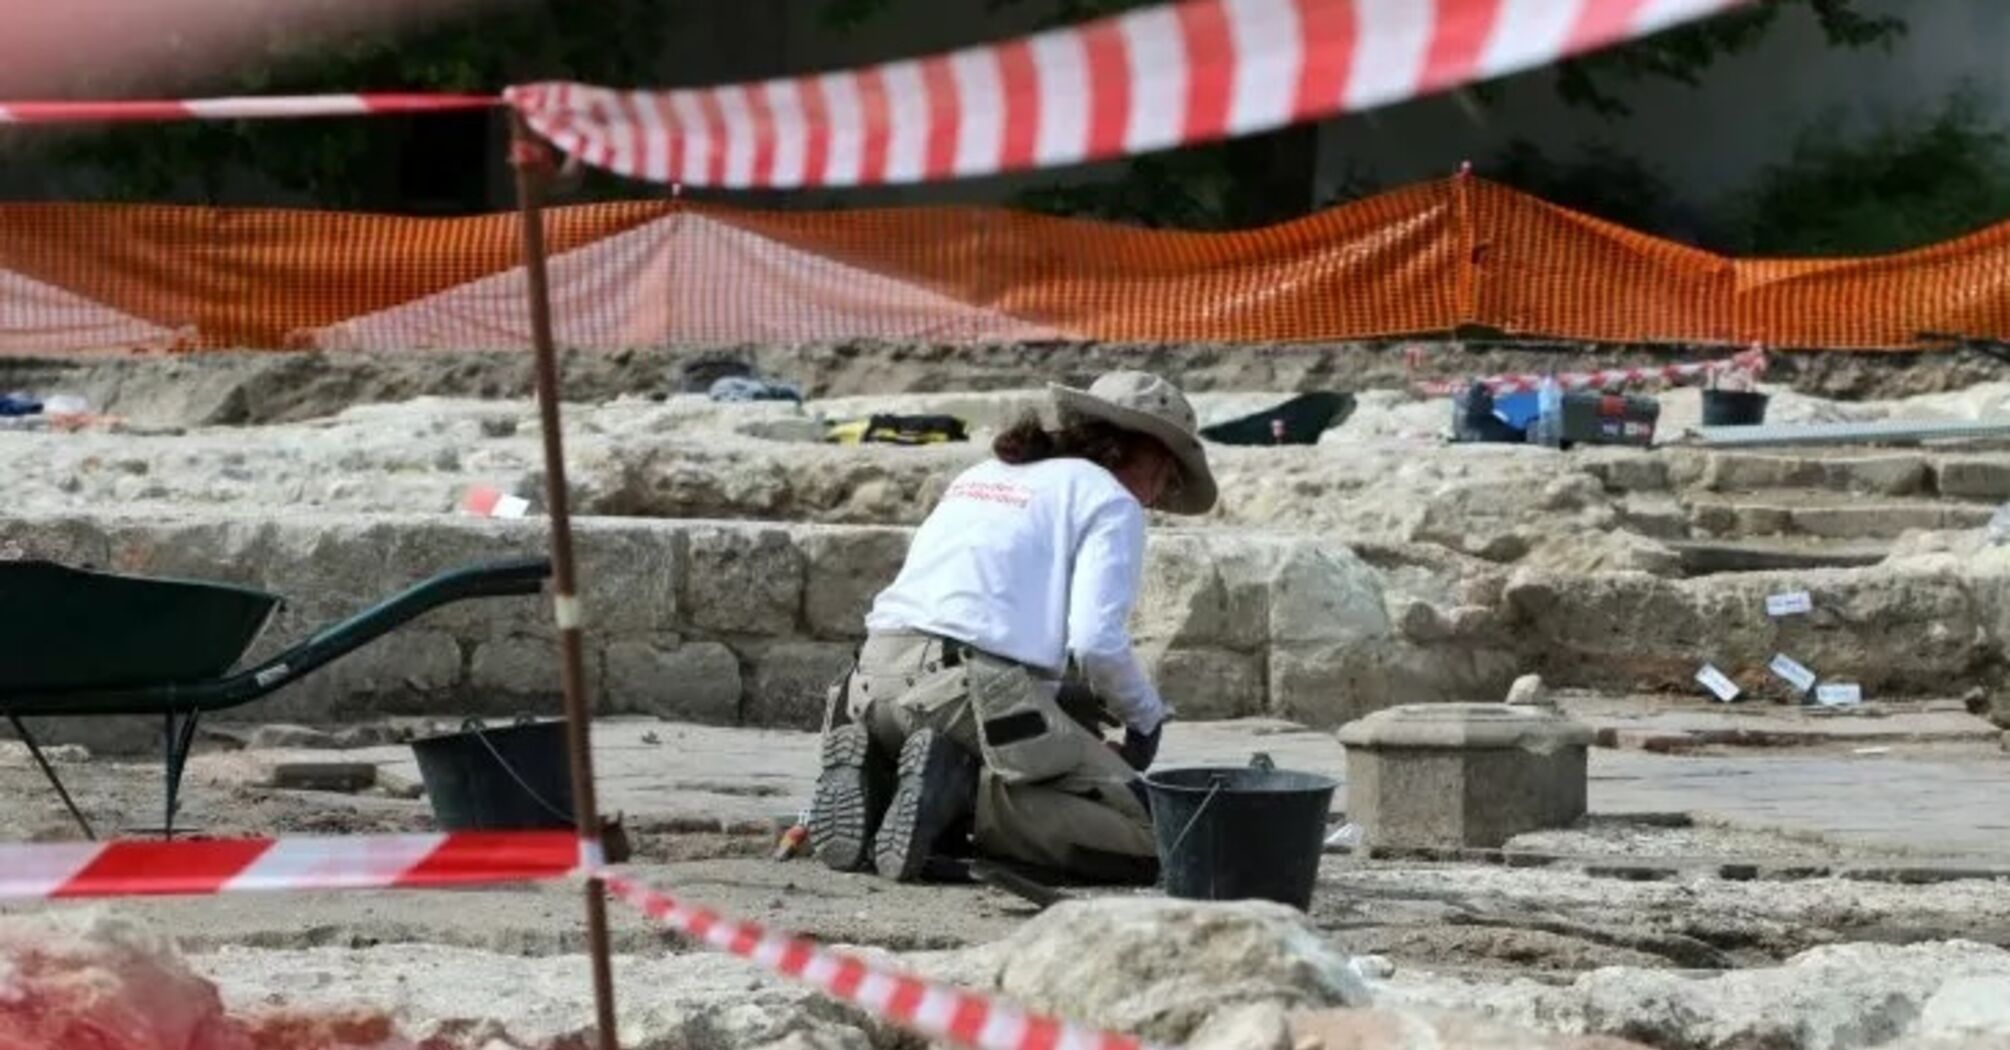 Тысячу человеческих скелетов нашли на территории аббатства во Франции (фото)